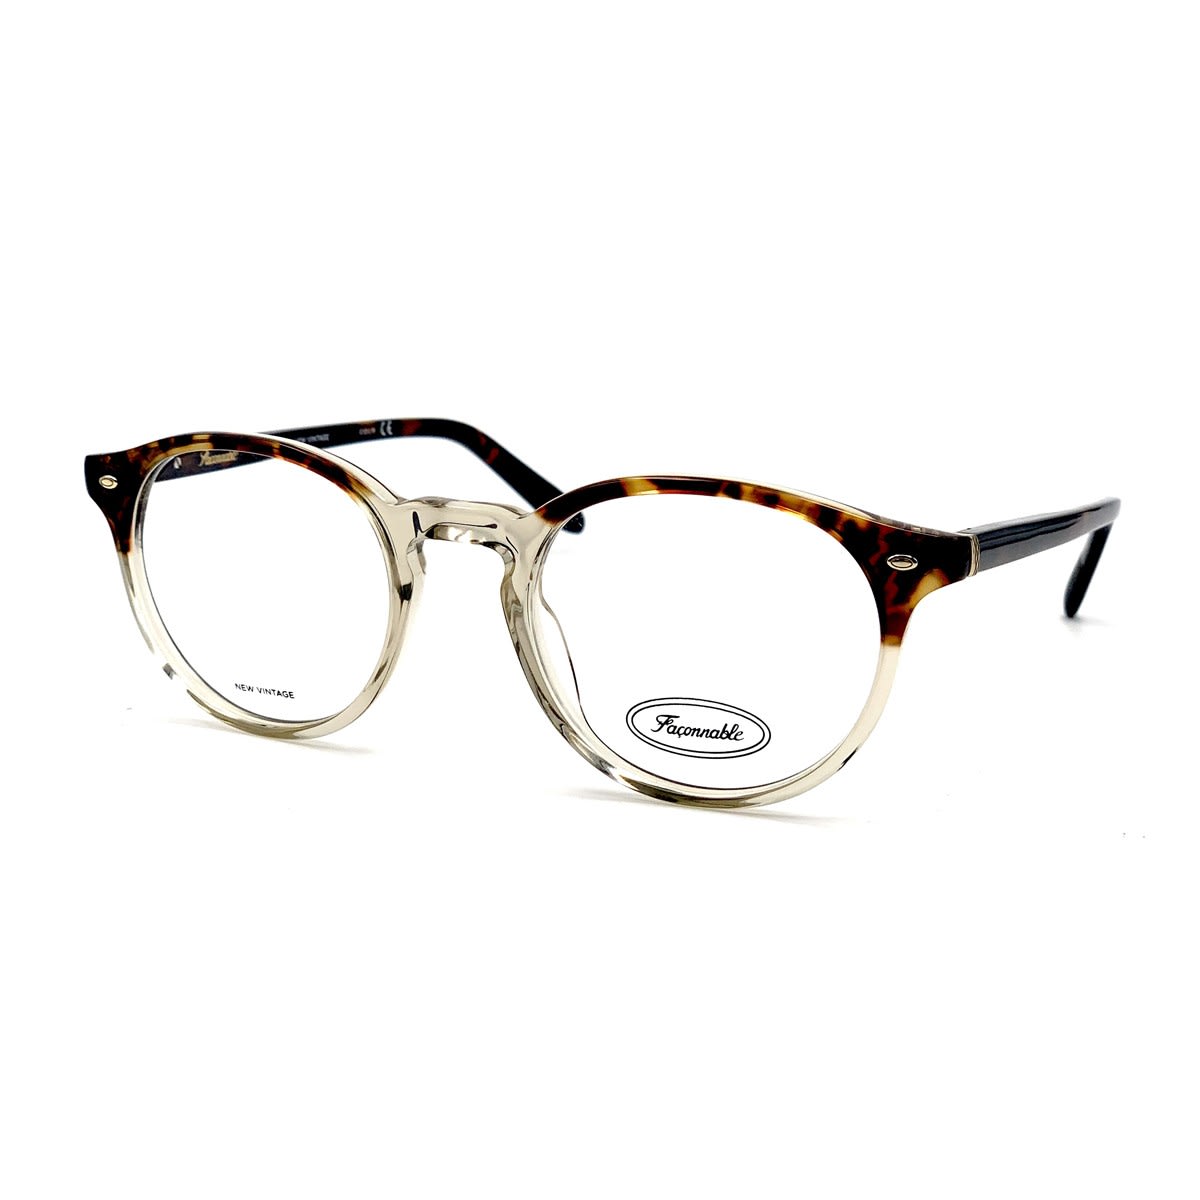 Façonnable Nv250 Ecnc Glasses